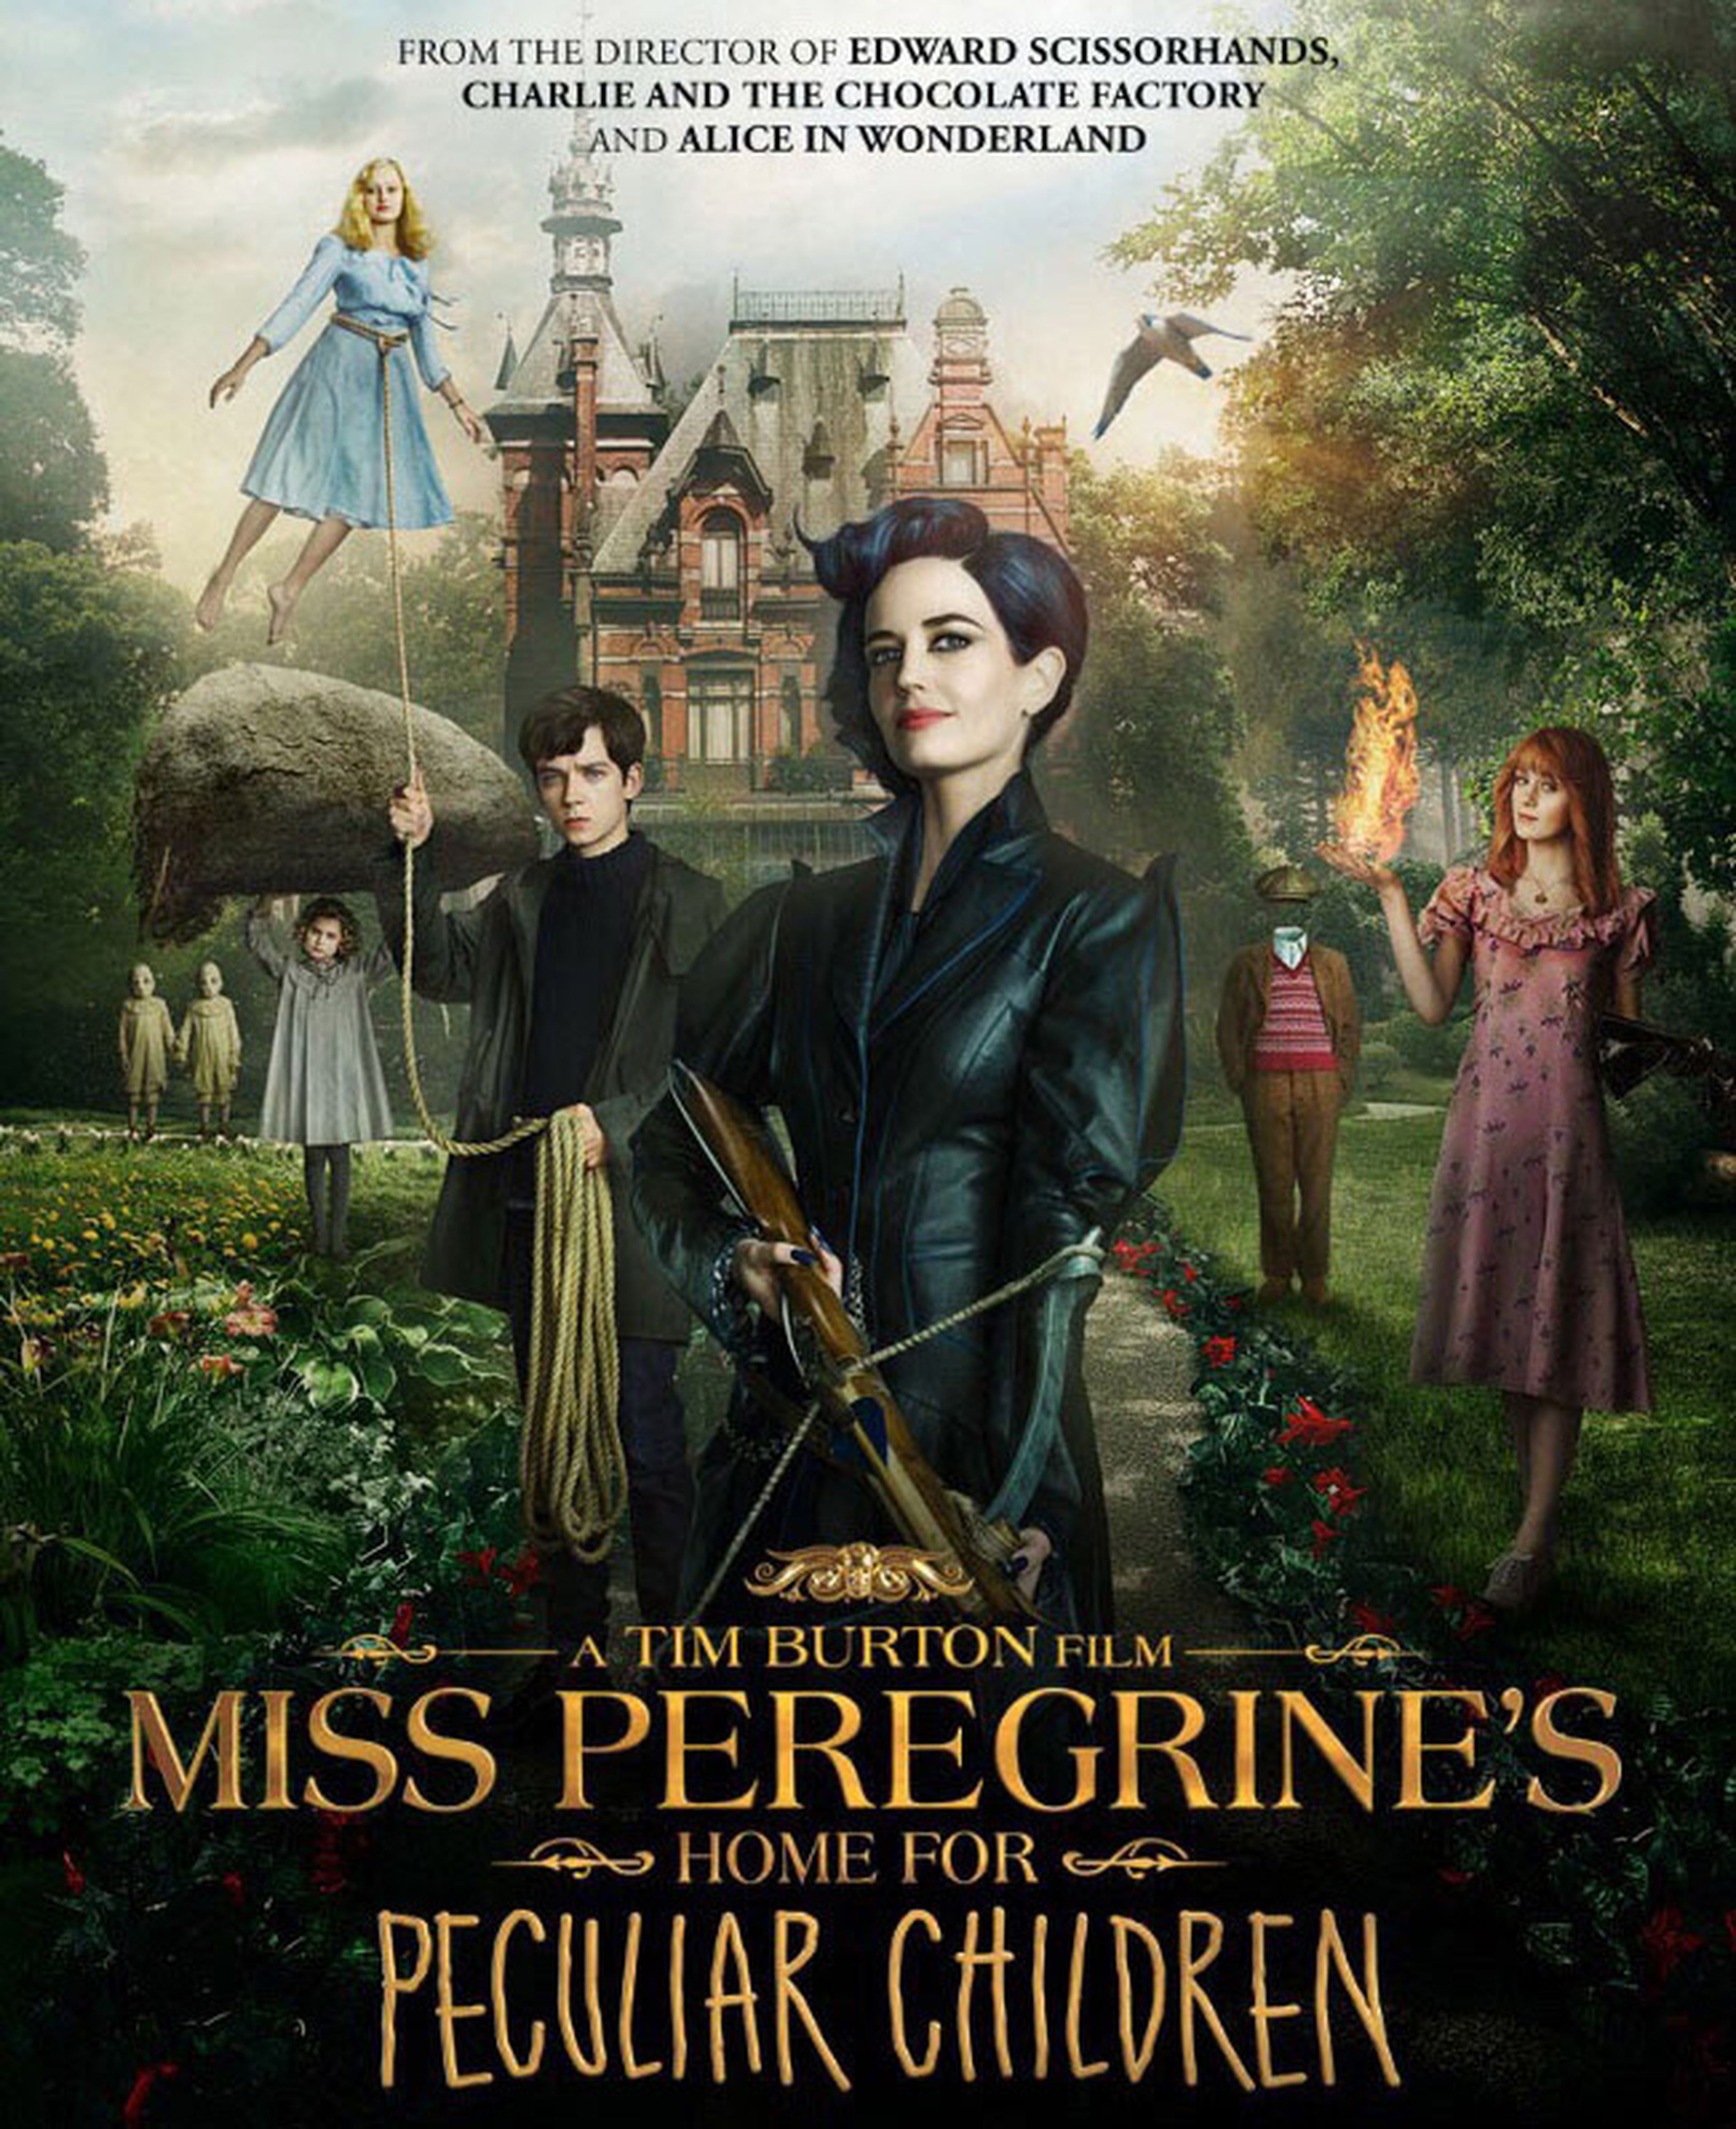 El hogar de Miss Peregrine para niños peculiares - Nuevo tráiler de lo último de Tim Burton